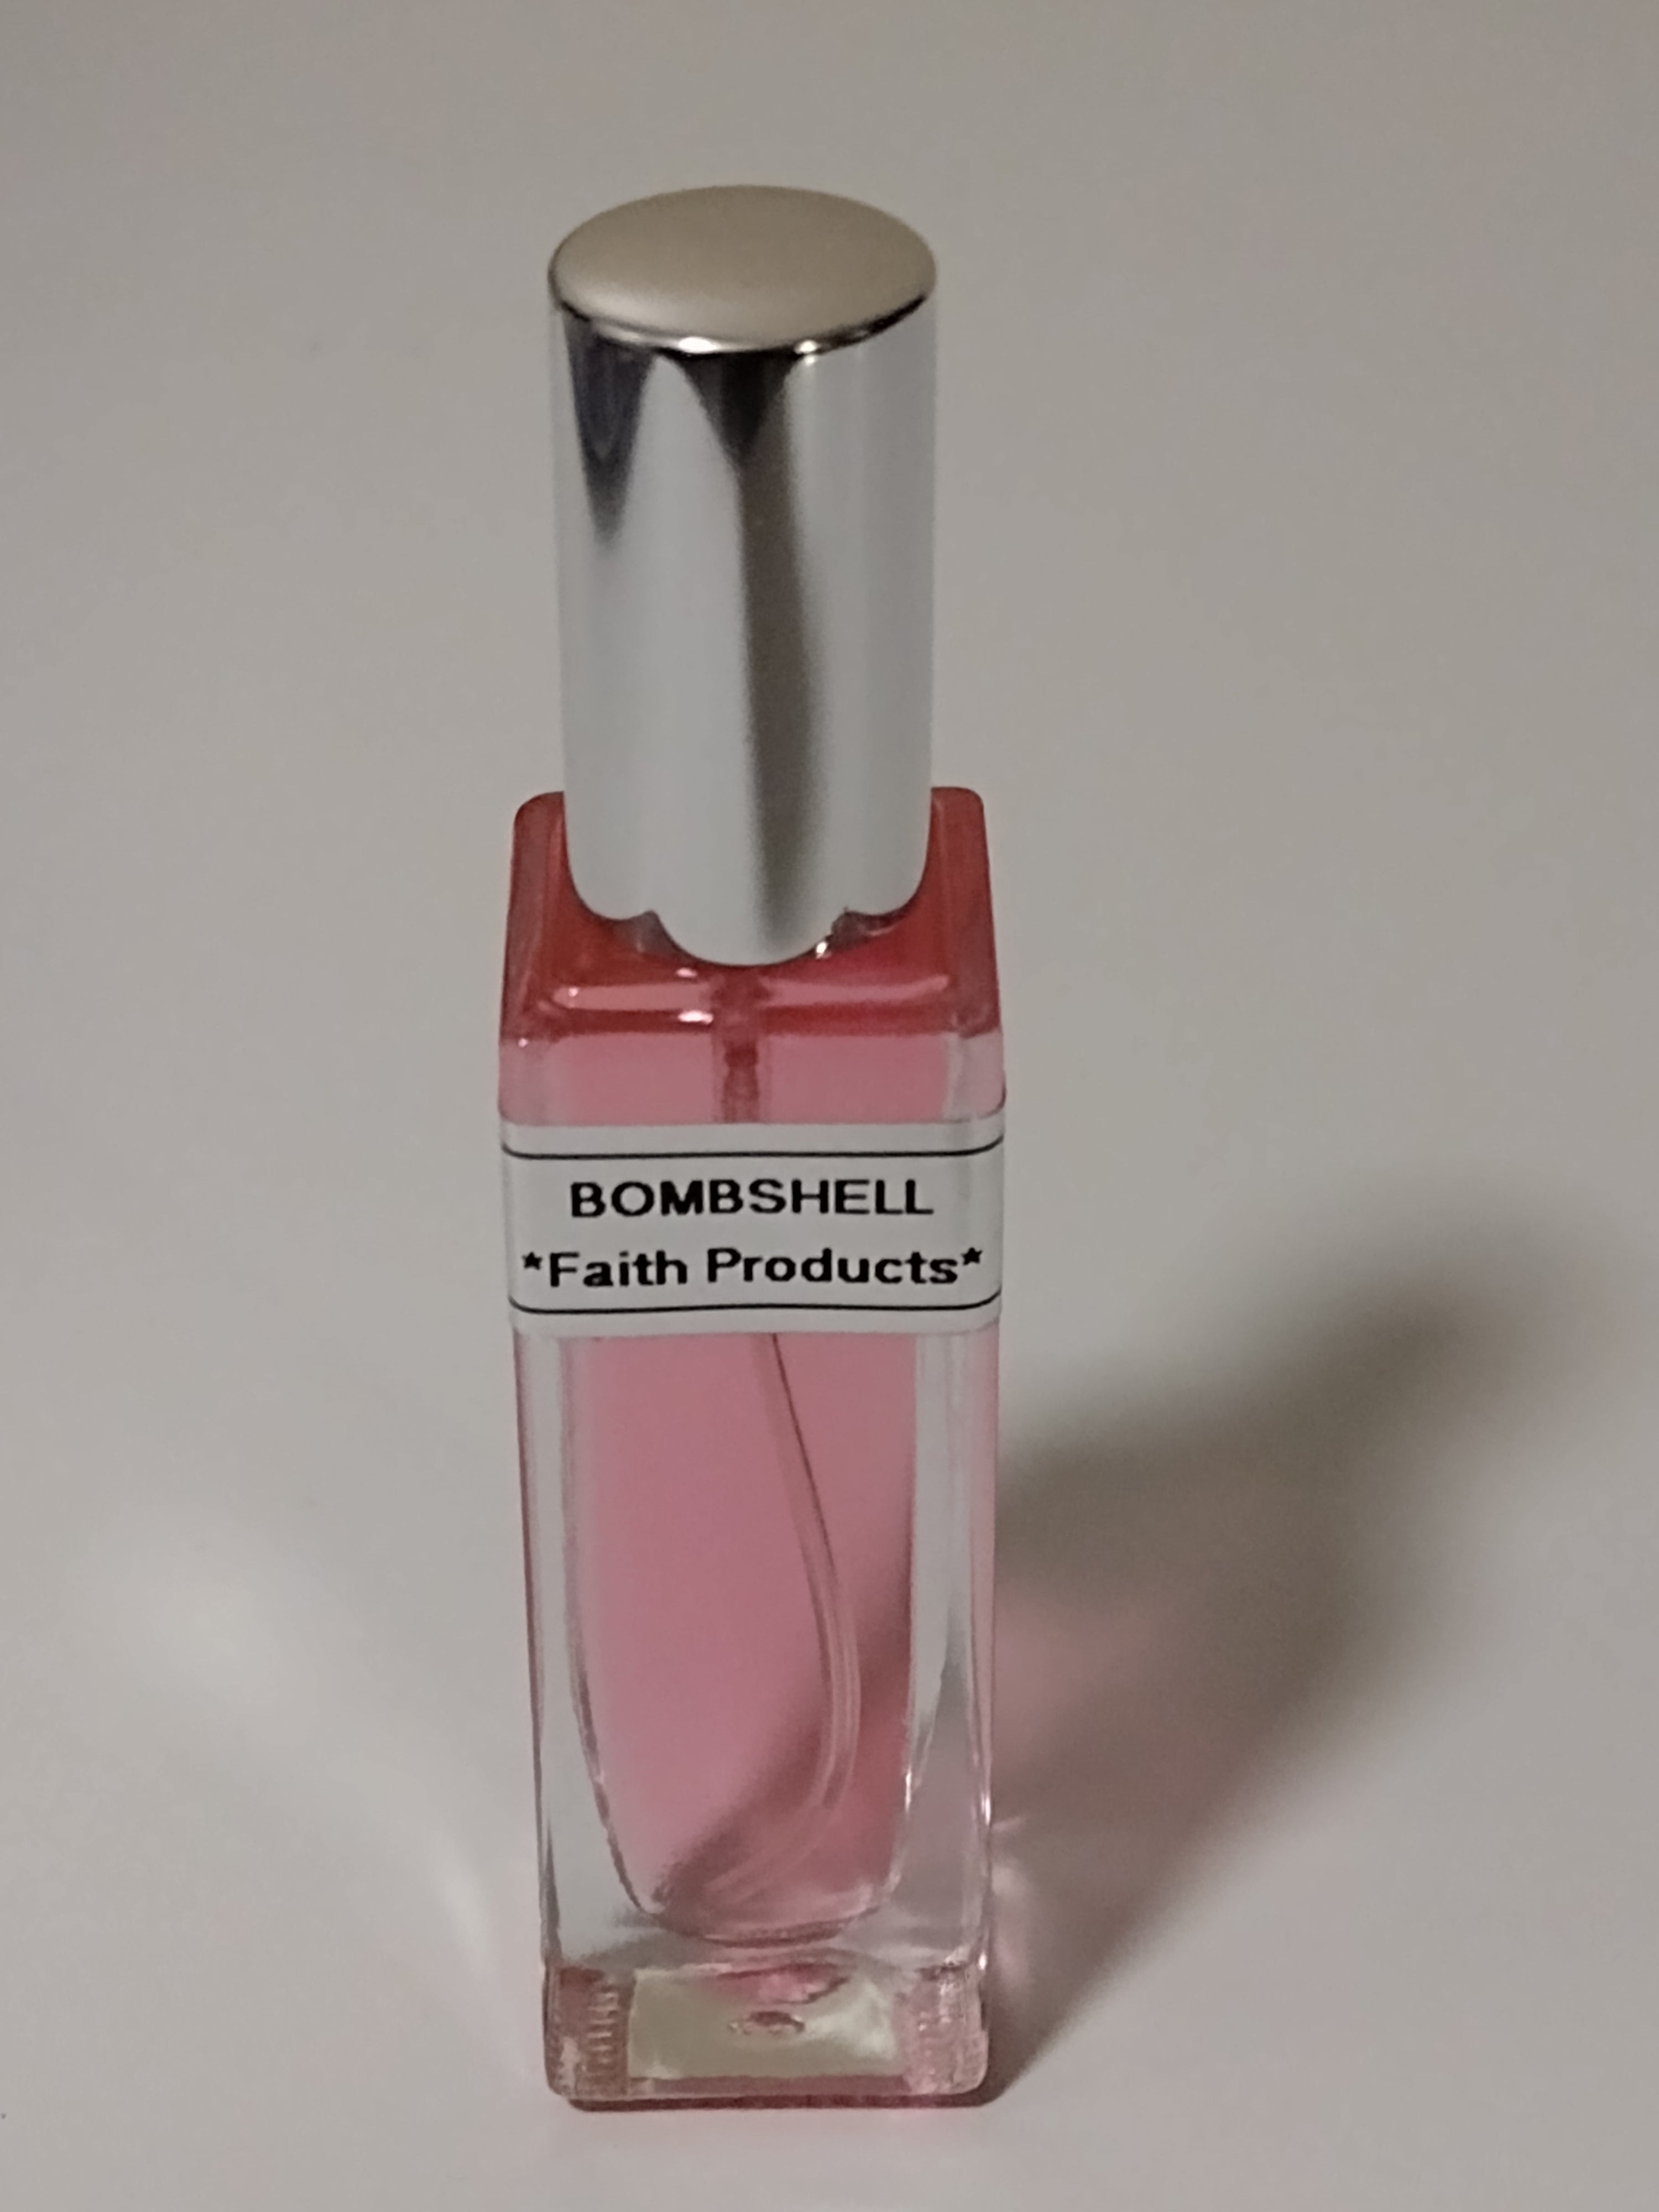 Bombshell Women's Body Oil .6oz. Spray Bottle